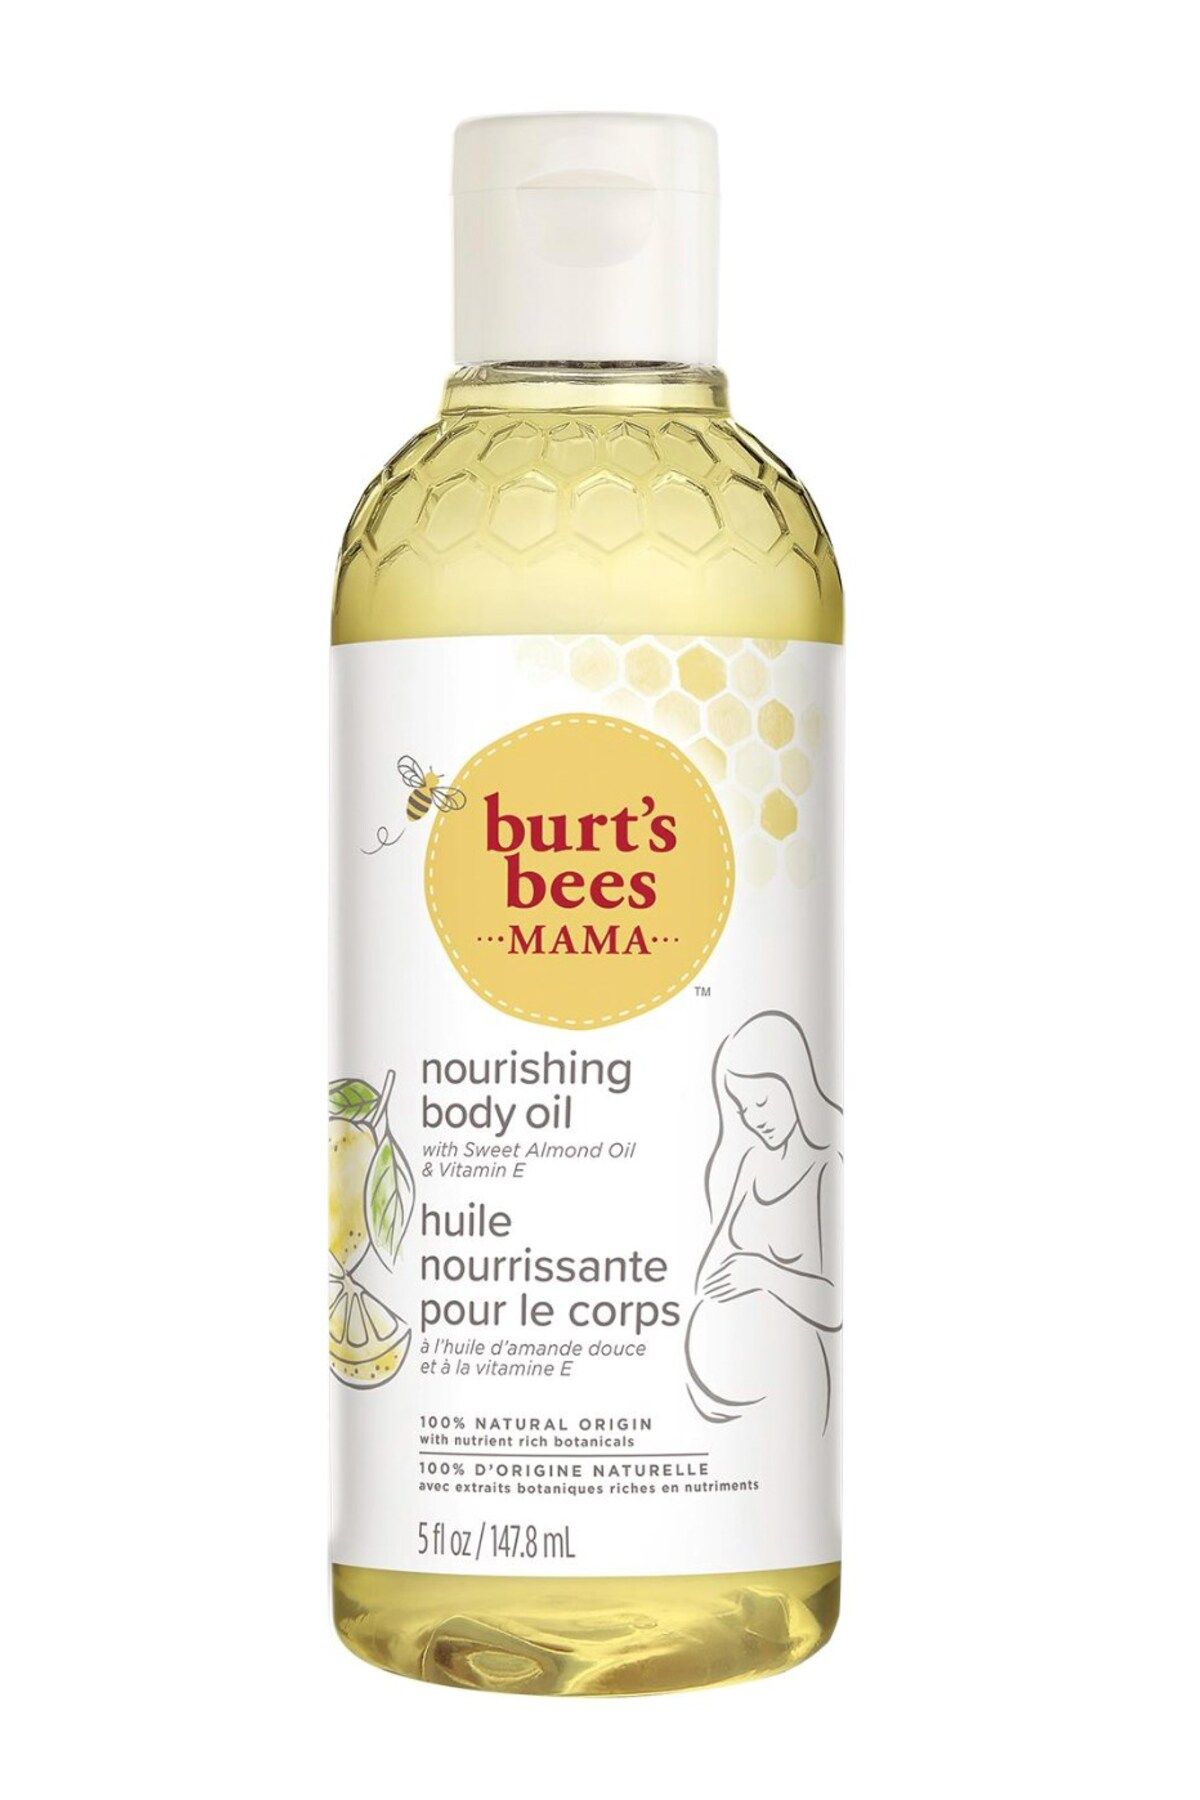 Burt's Bees Annelere Özel Vücut Bakım Yağı 147 ml